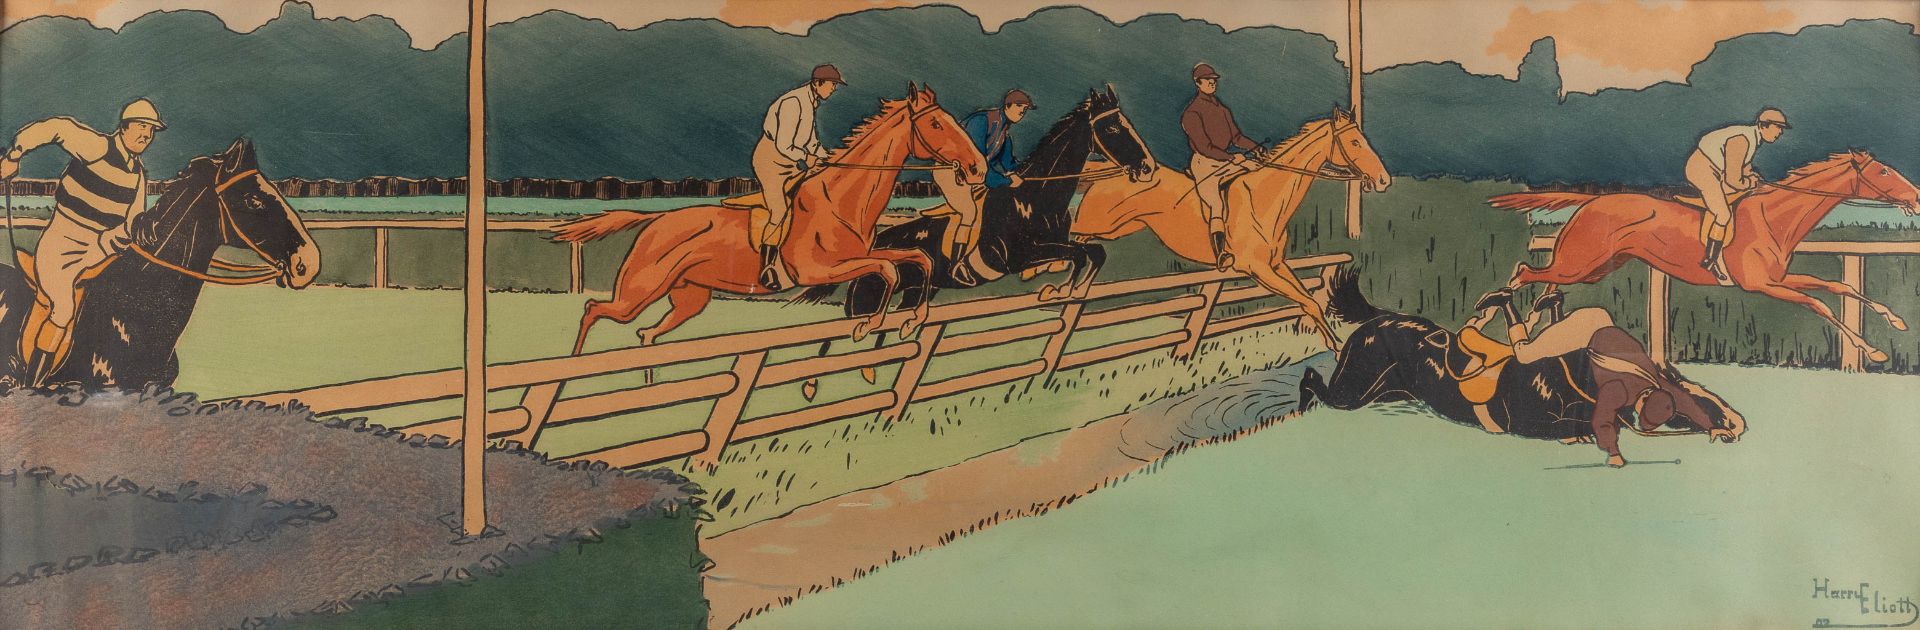 Harry ELIOTT (1882-1959) 'Jockey Race' watercolour on paper. 1902. (W:100 x H:33 cm)